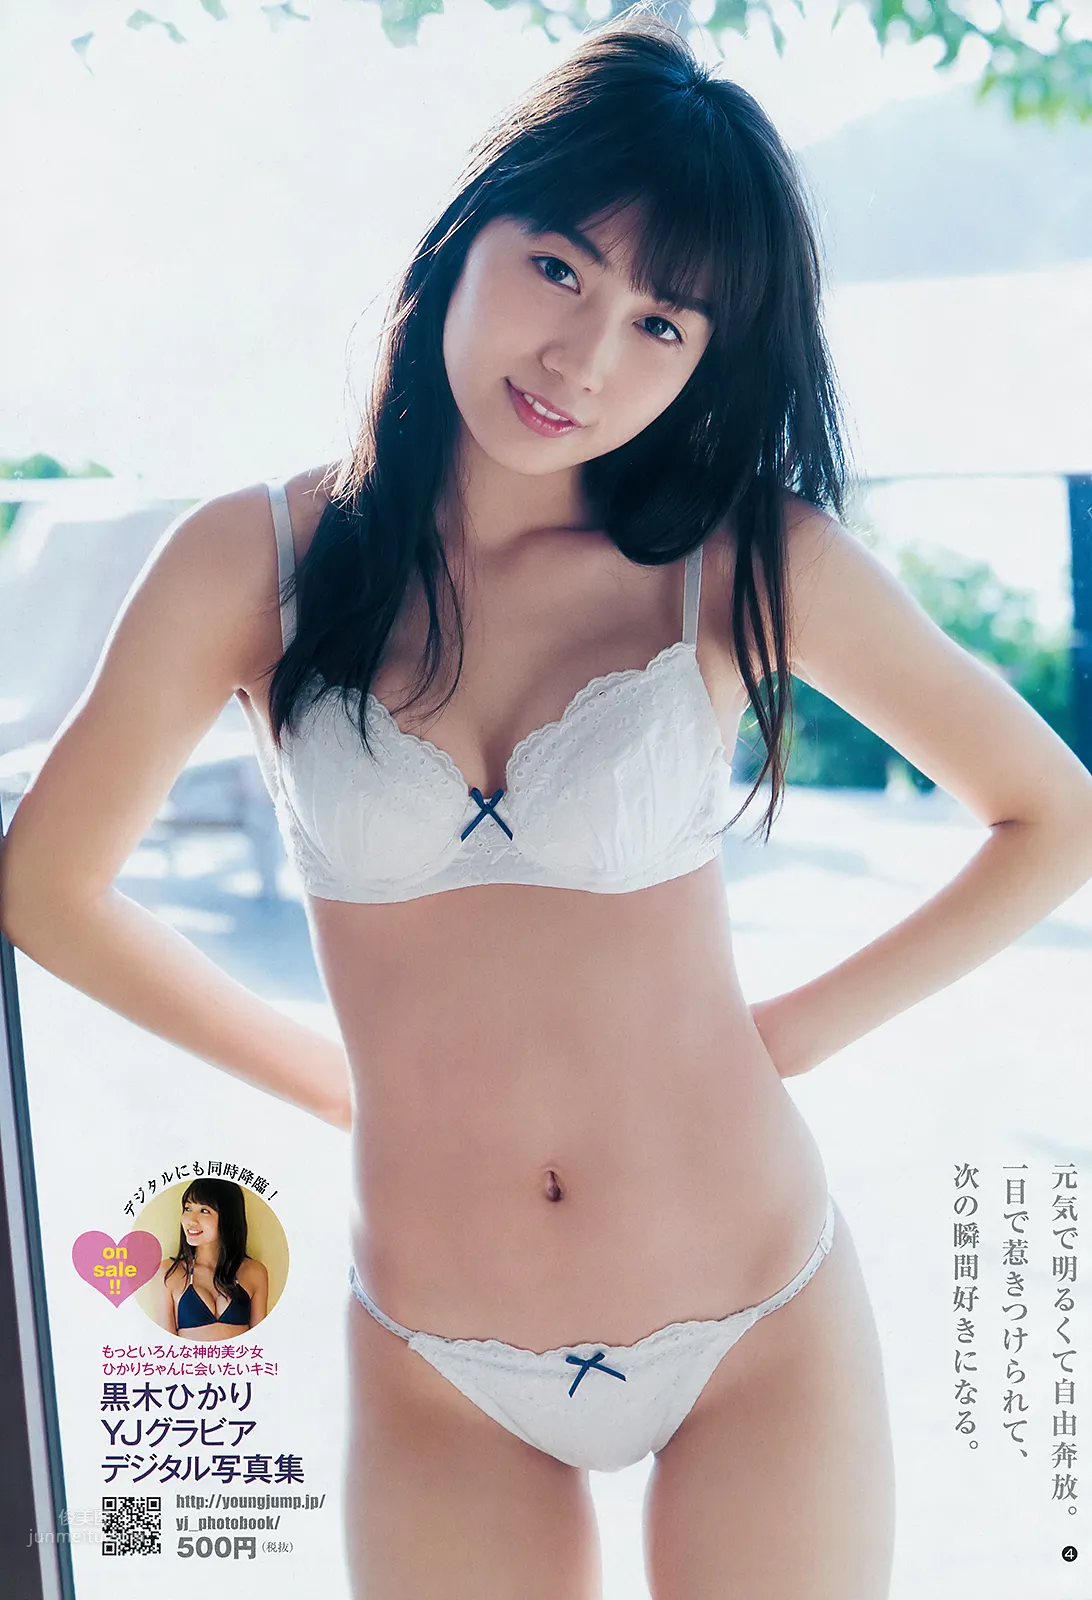 黒木ひかり,Hikari Kuroki - FLASH, Weekly SPA!, Weekly Playboy, Young Jump, 2019_4